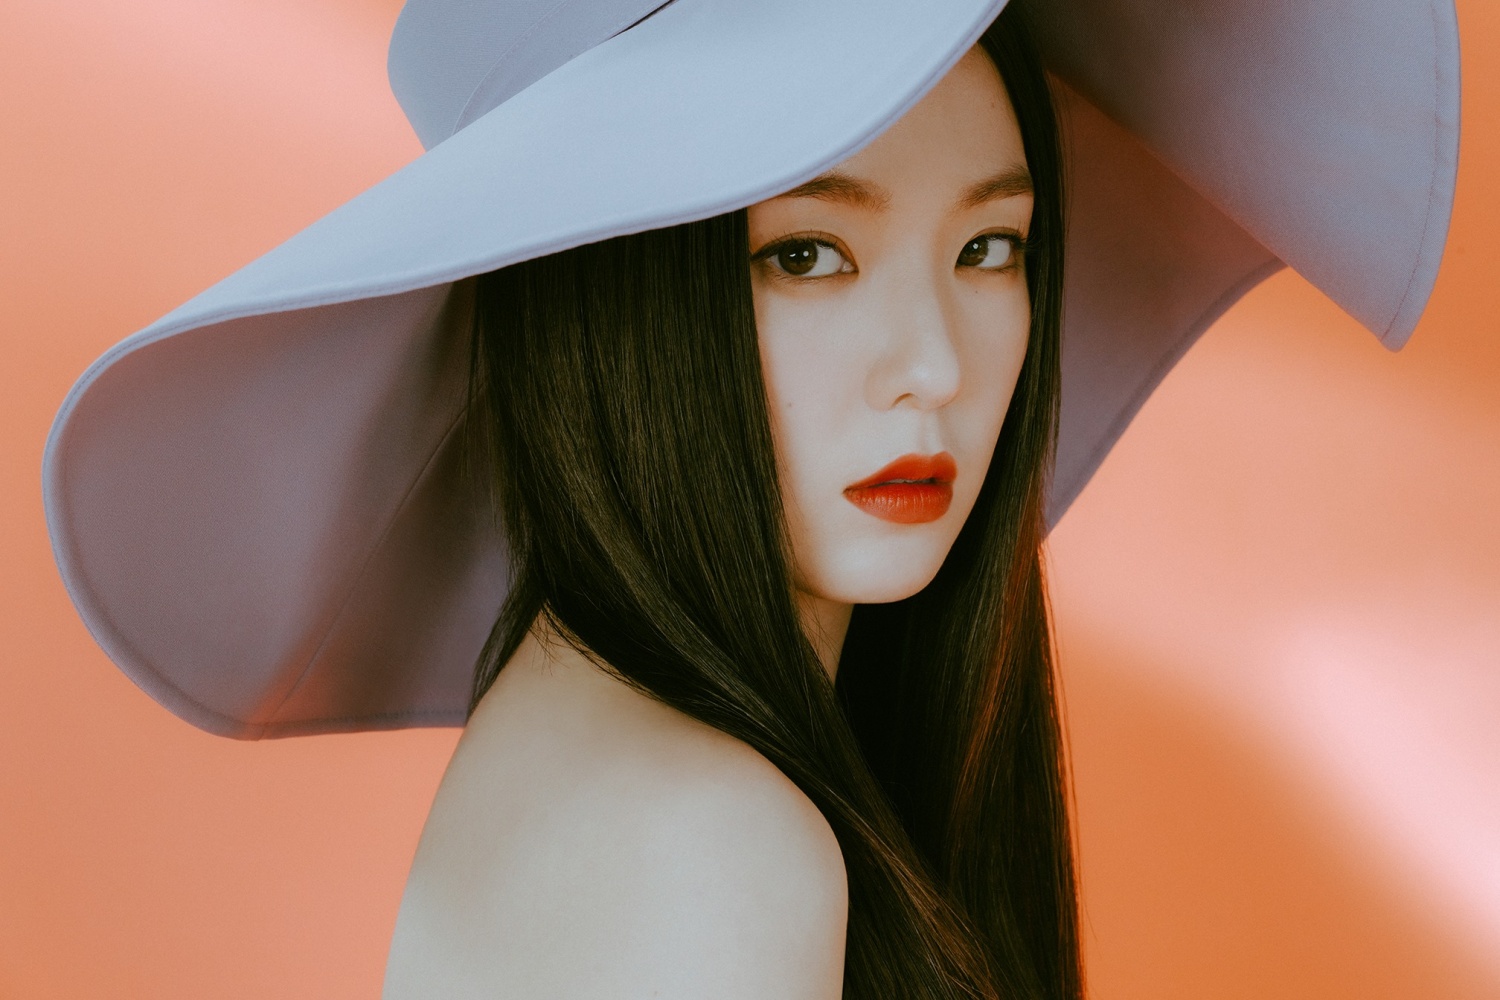 'Debut D-3' Red Velvet Irene & SEULGI, 'Monster' MV teaser released